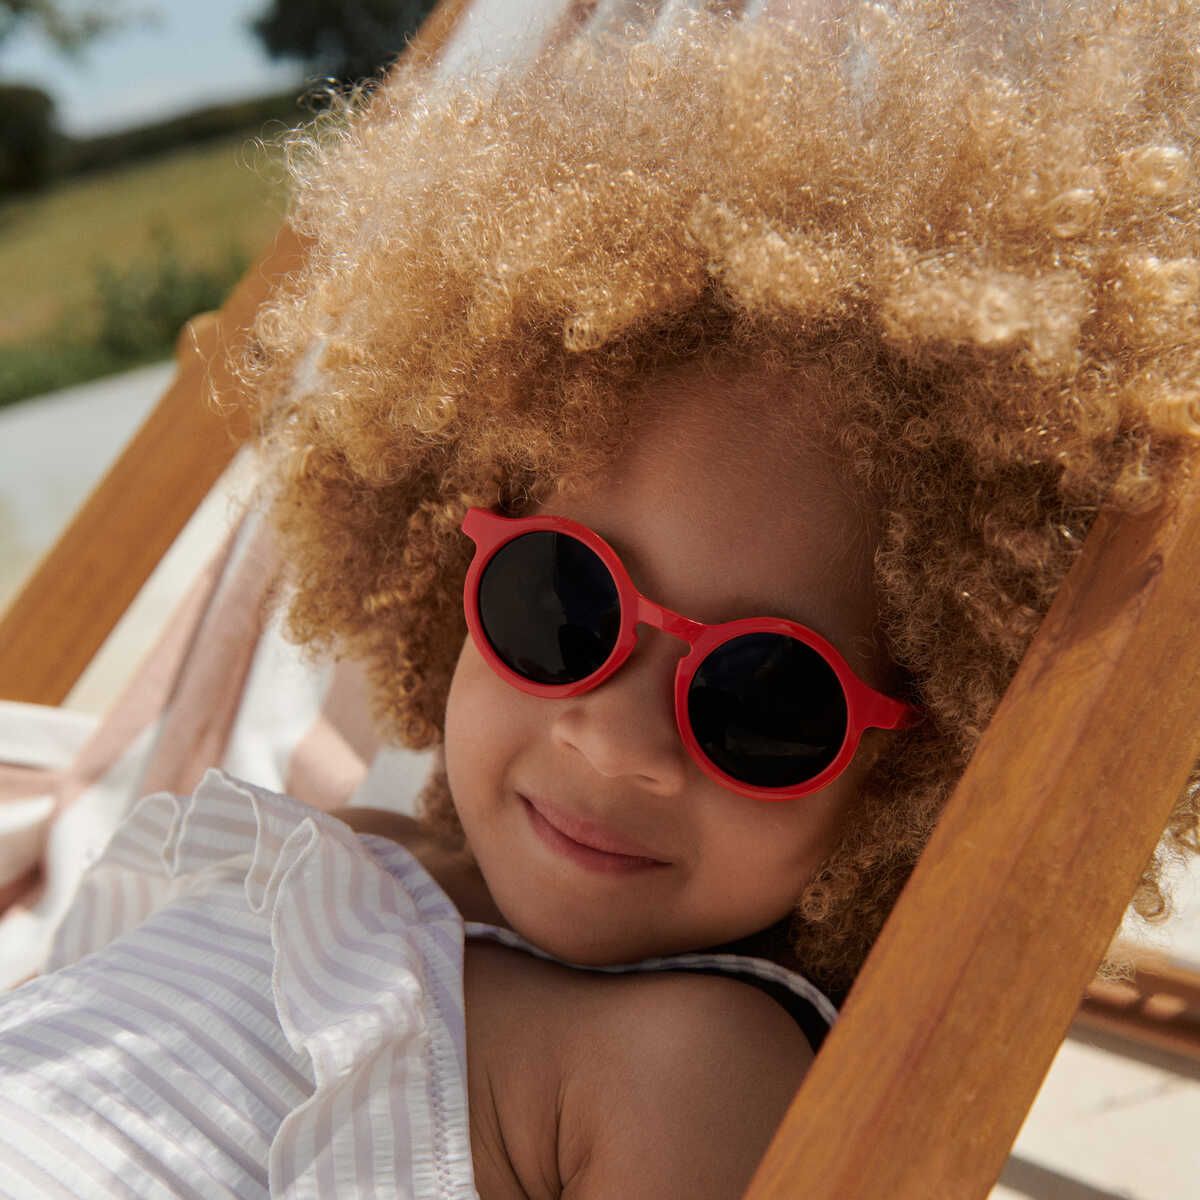 Mode für kleine mädchen und herzförmige sonnenbrille auf isoliertem rotem  hintergrund im kindertrend-urlaubsstil oder im kühlen sommer. lächeln sie  glücklich und kind mit brille für augengesundheit, wellness oder  sonnenschutz